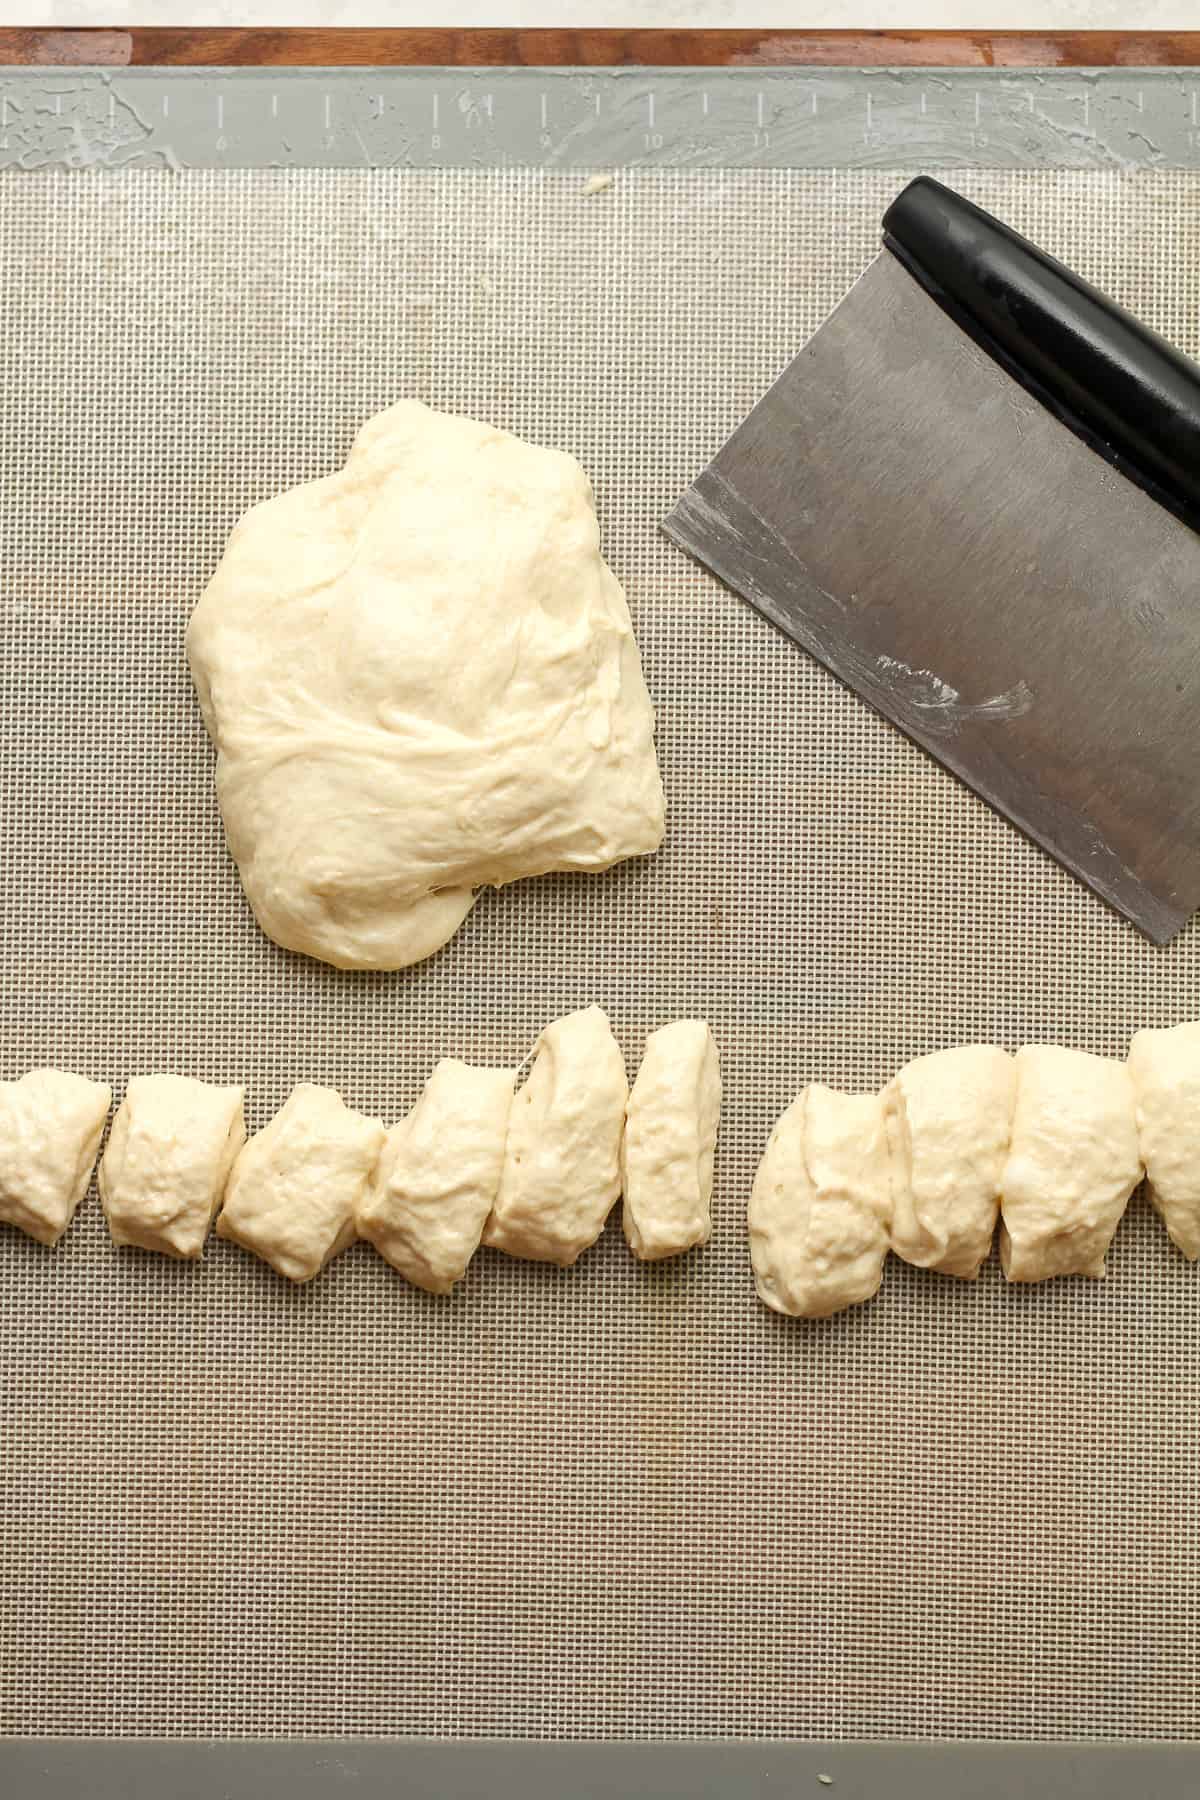 Some pretzel dough cut into bite-sized pieces.